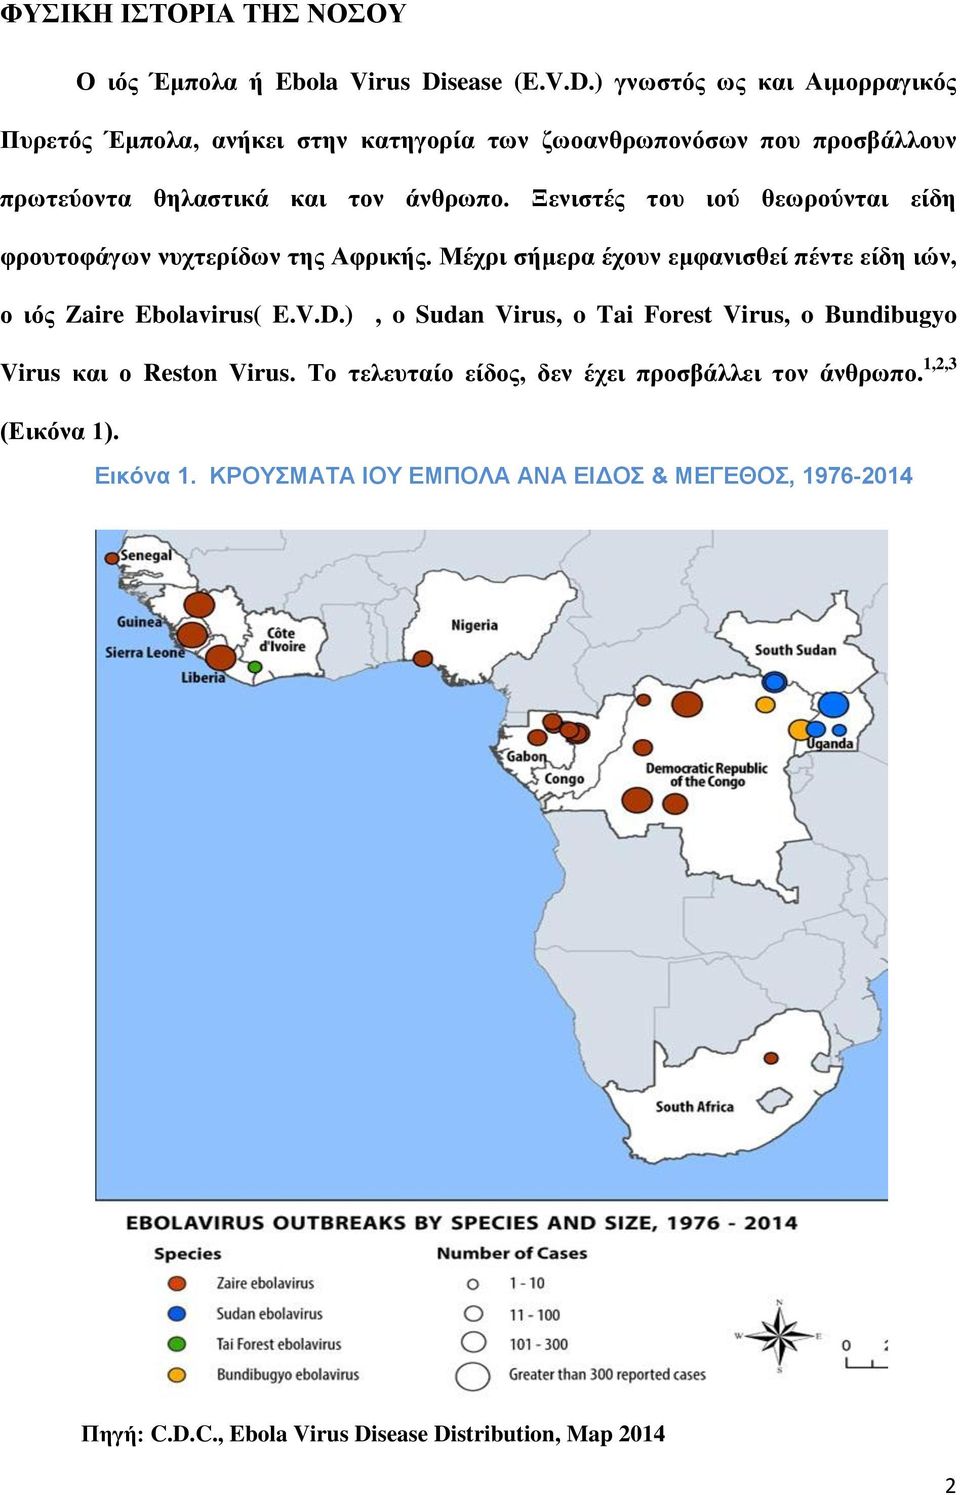 Ξενιστές του ιού θεωρούνται είδη φρουτοφάγων νυχτερίδων της Αφρικής. Μέχρι σήμερα έχουν εμφανισθεί πέντε είδη ιών, ο ιός Zaire Ebolavirus( E.V.D.